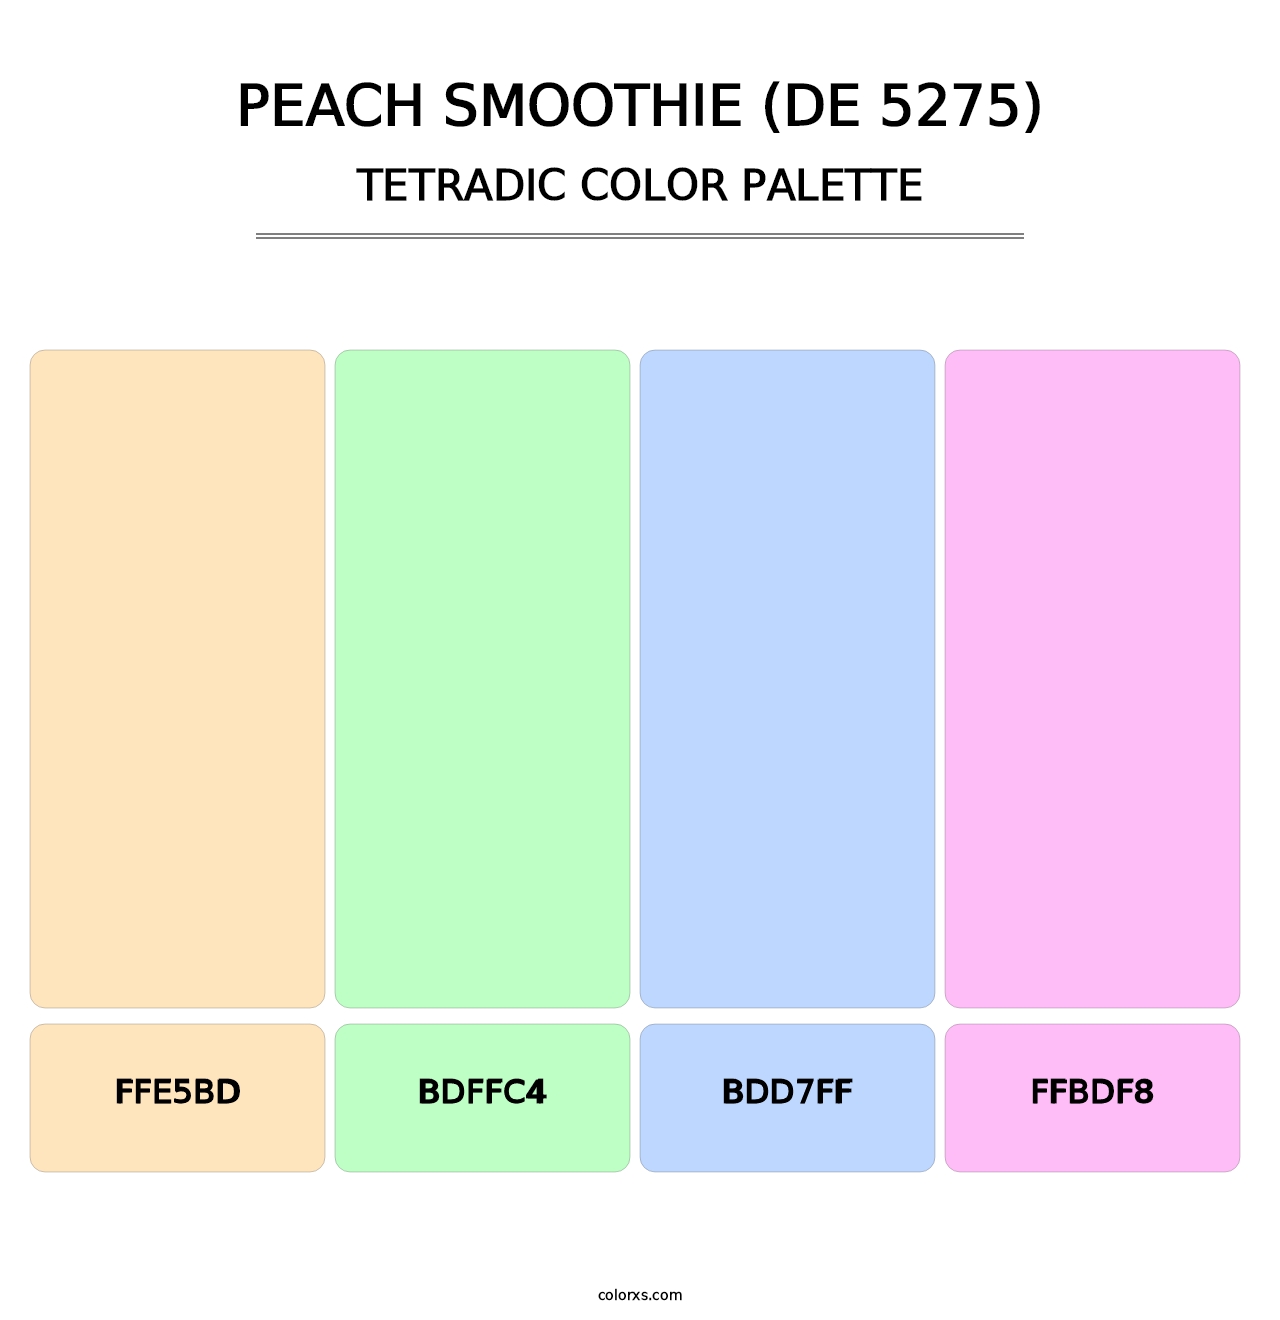 Peach Smoothie (DE 5275) - Tetradic Color Palette